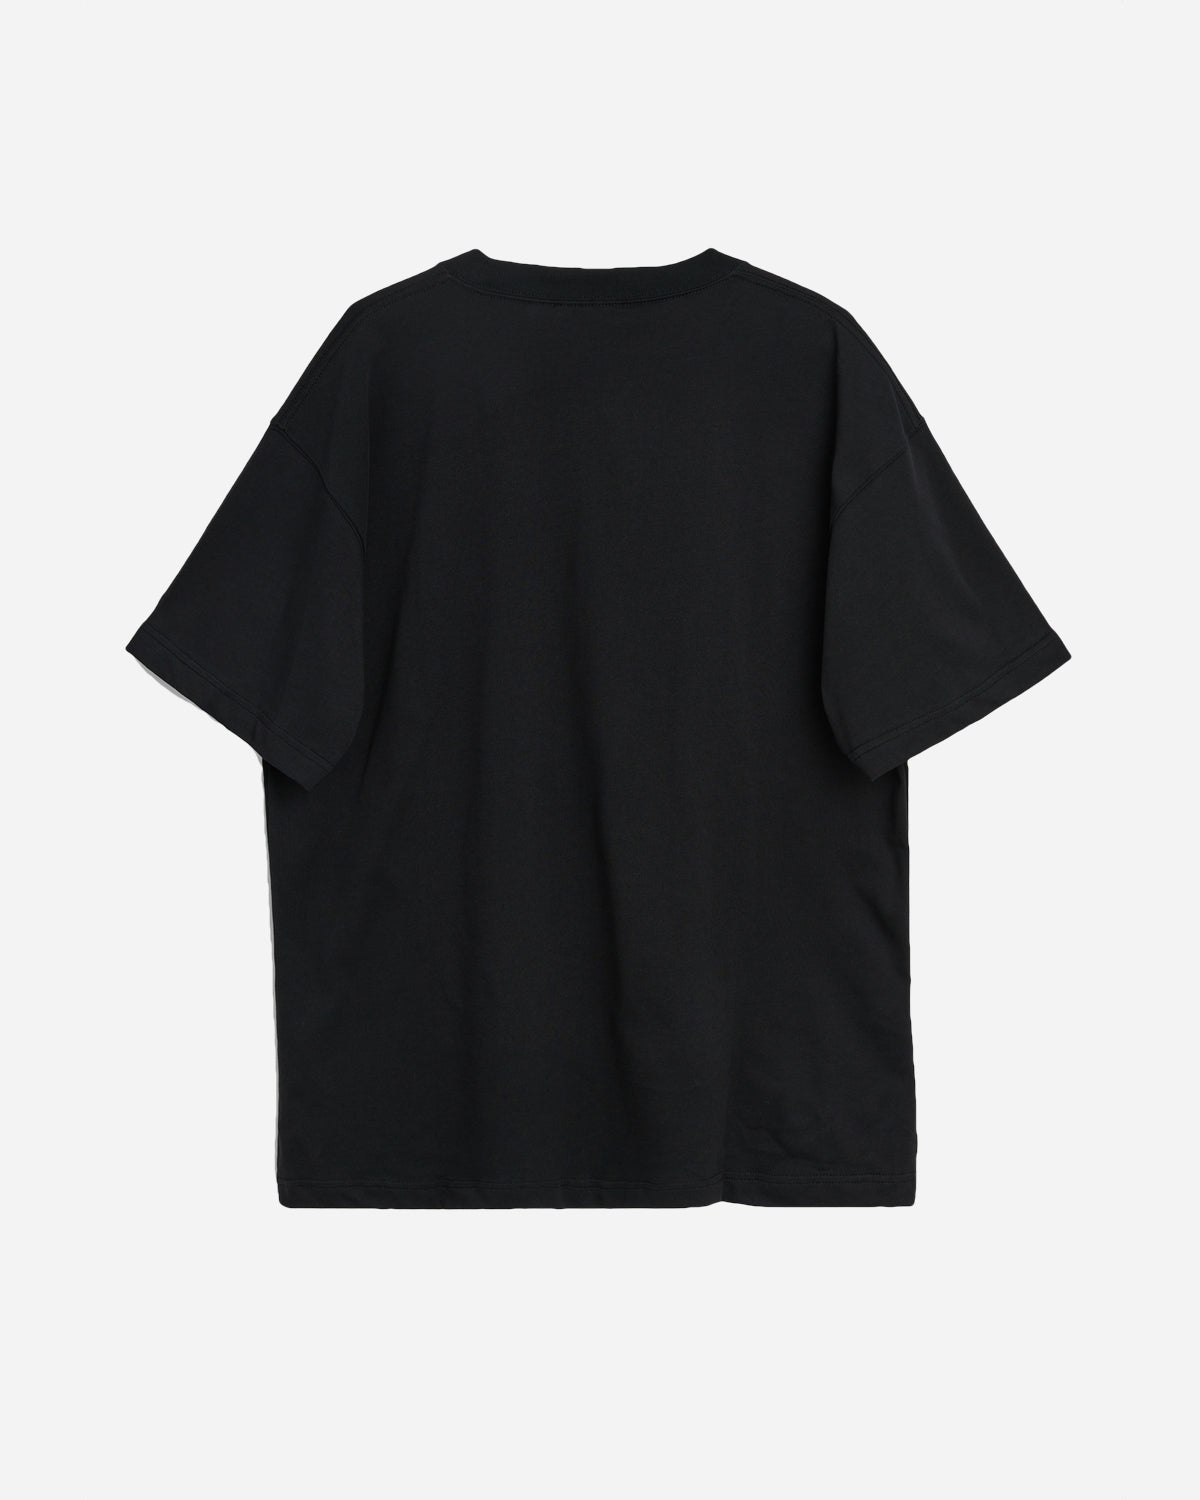 Kai T-shirt Kid - Black